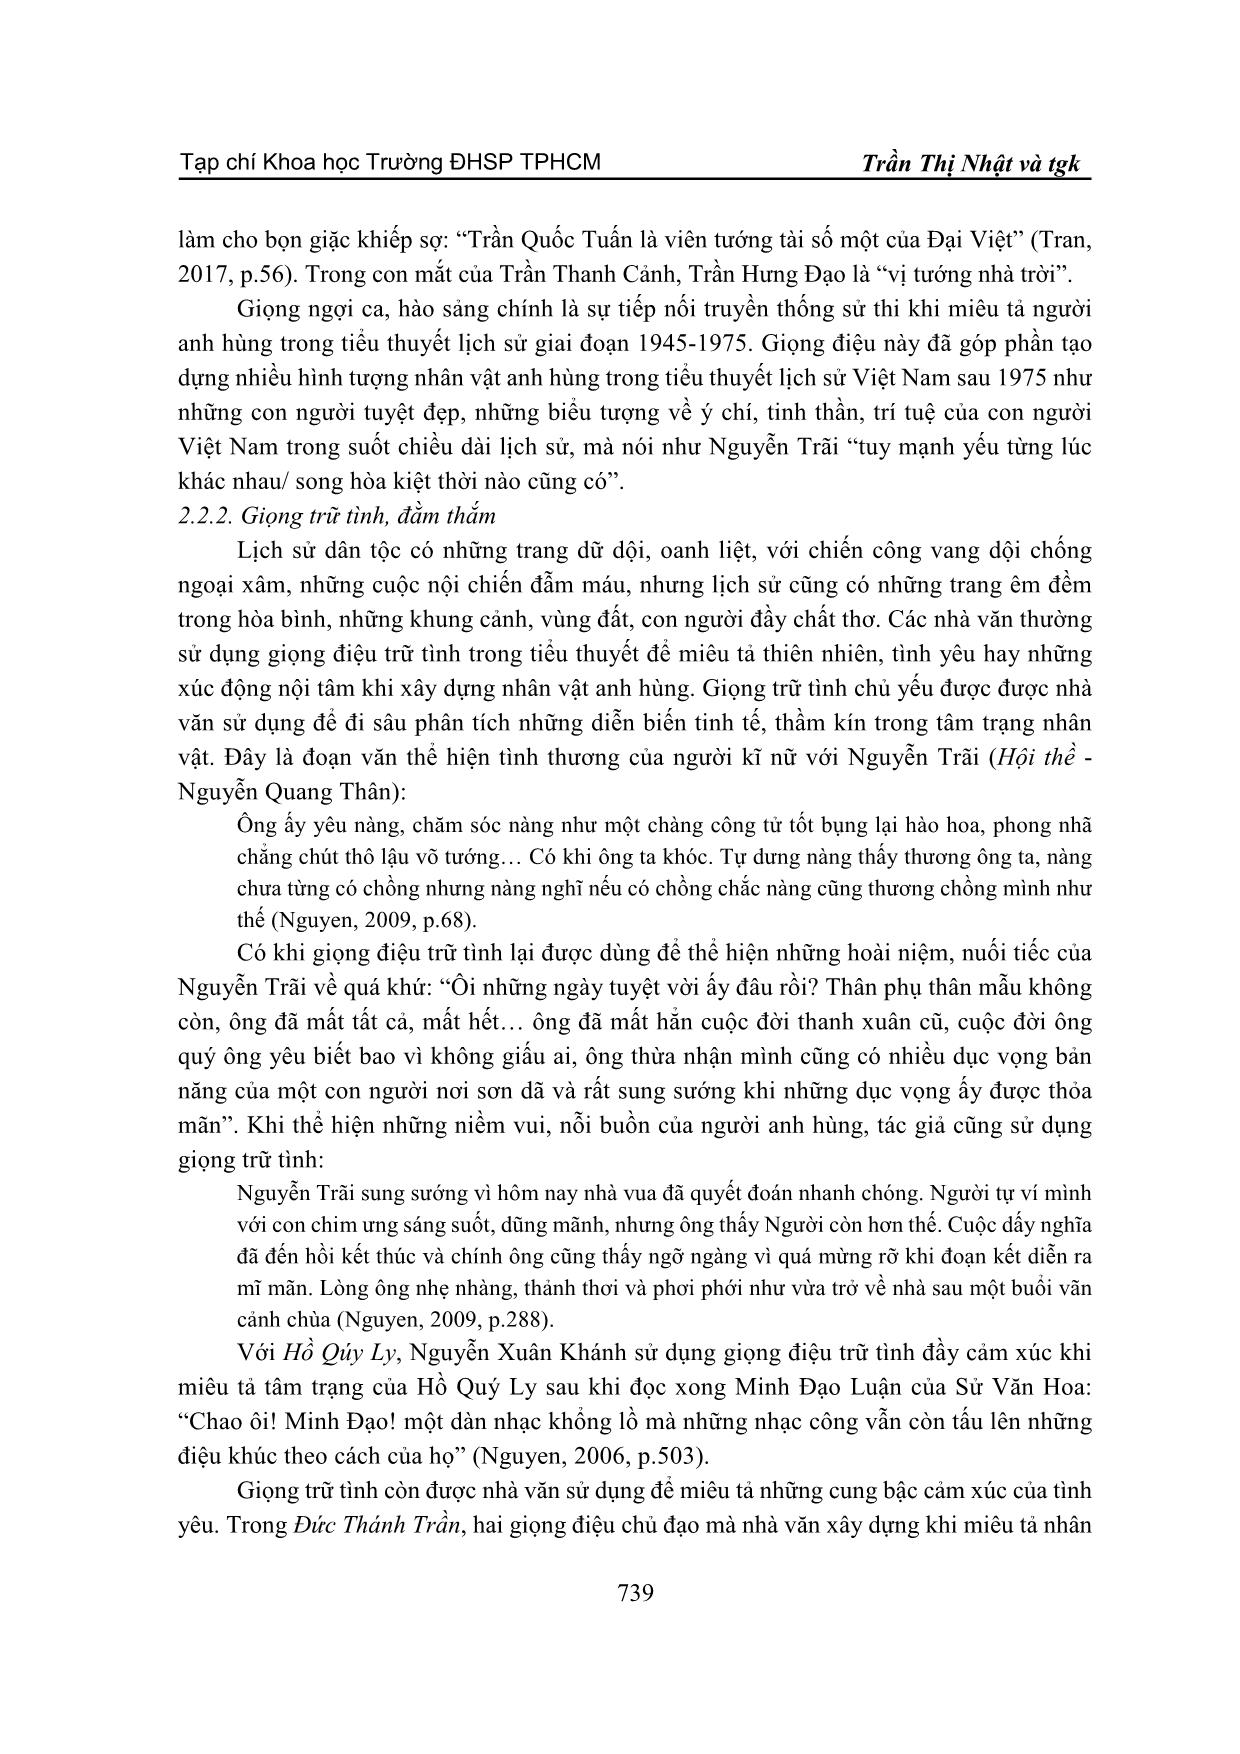 Điểm nhìn và giọng điệu trần thuật khi miêu tả nhân vật anh hùng trong tiểu thuyết lịch sử Việt Nam sau 1975 trang 9